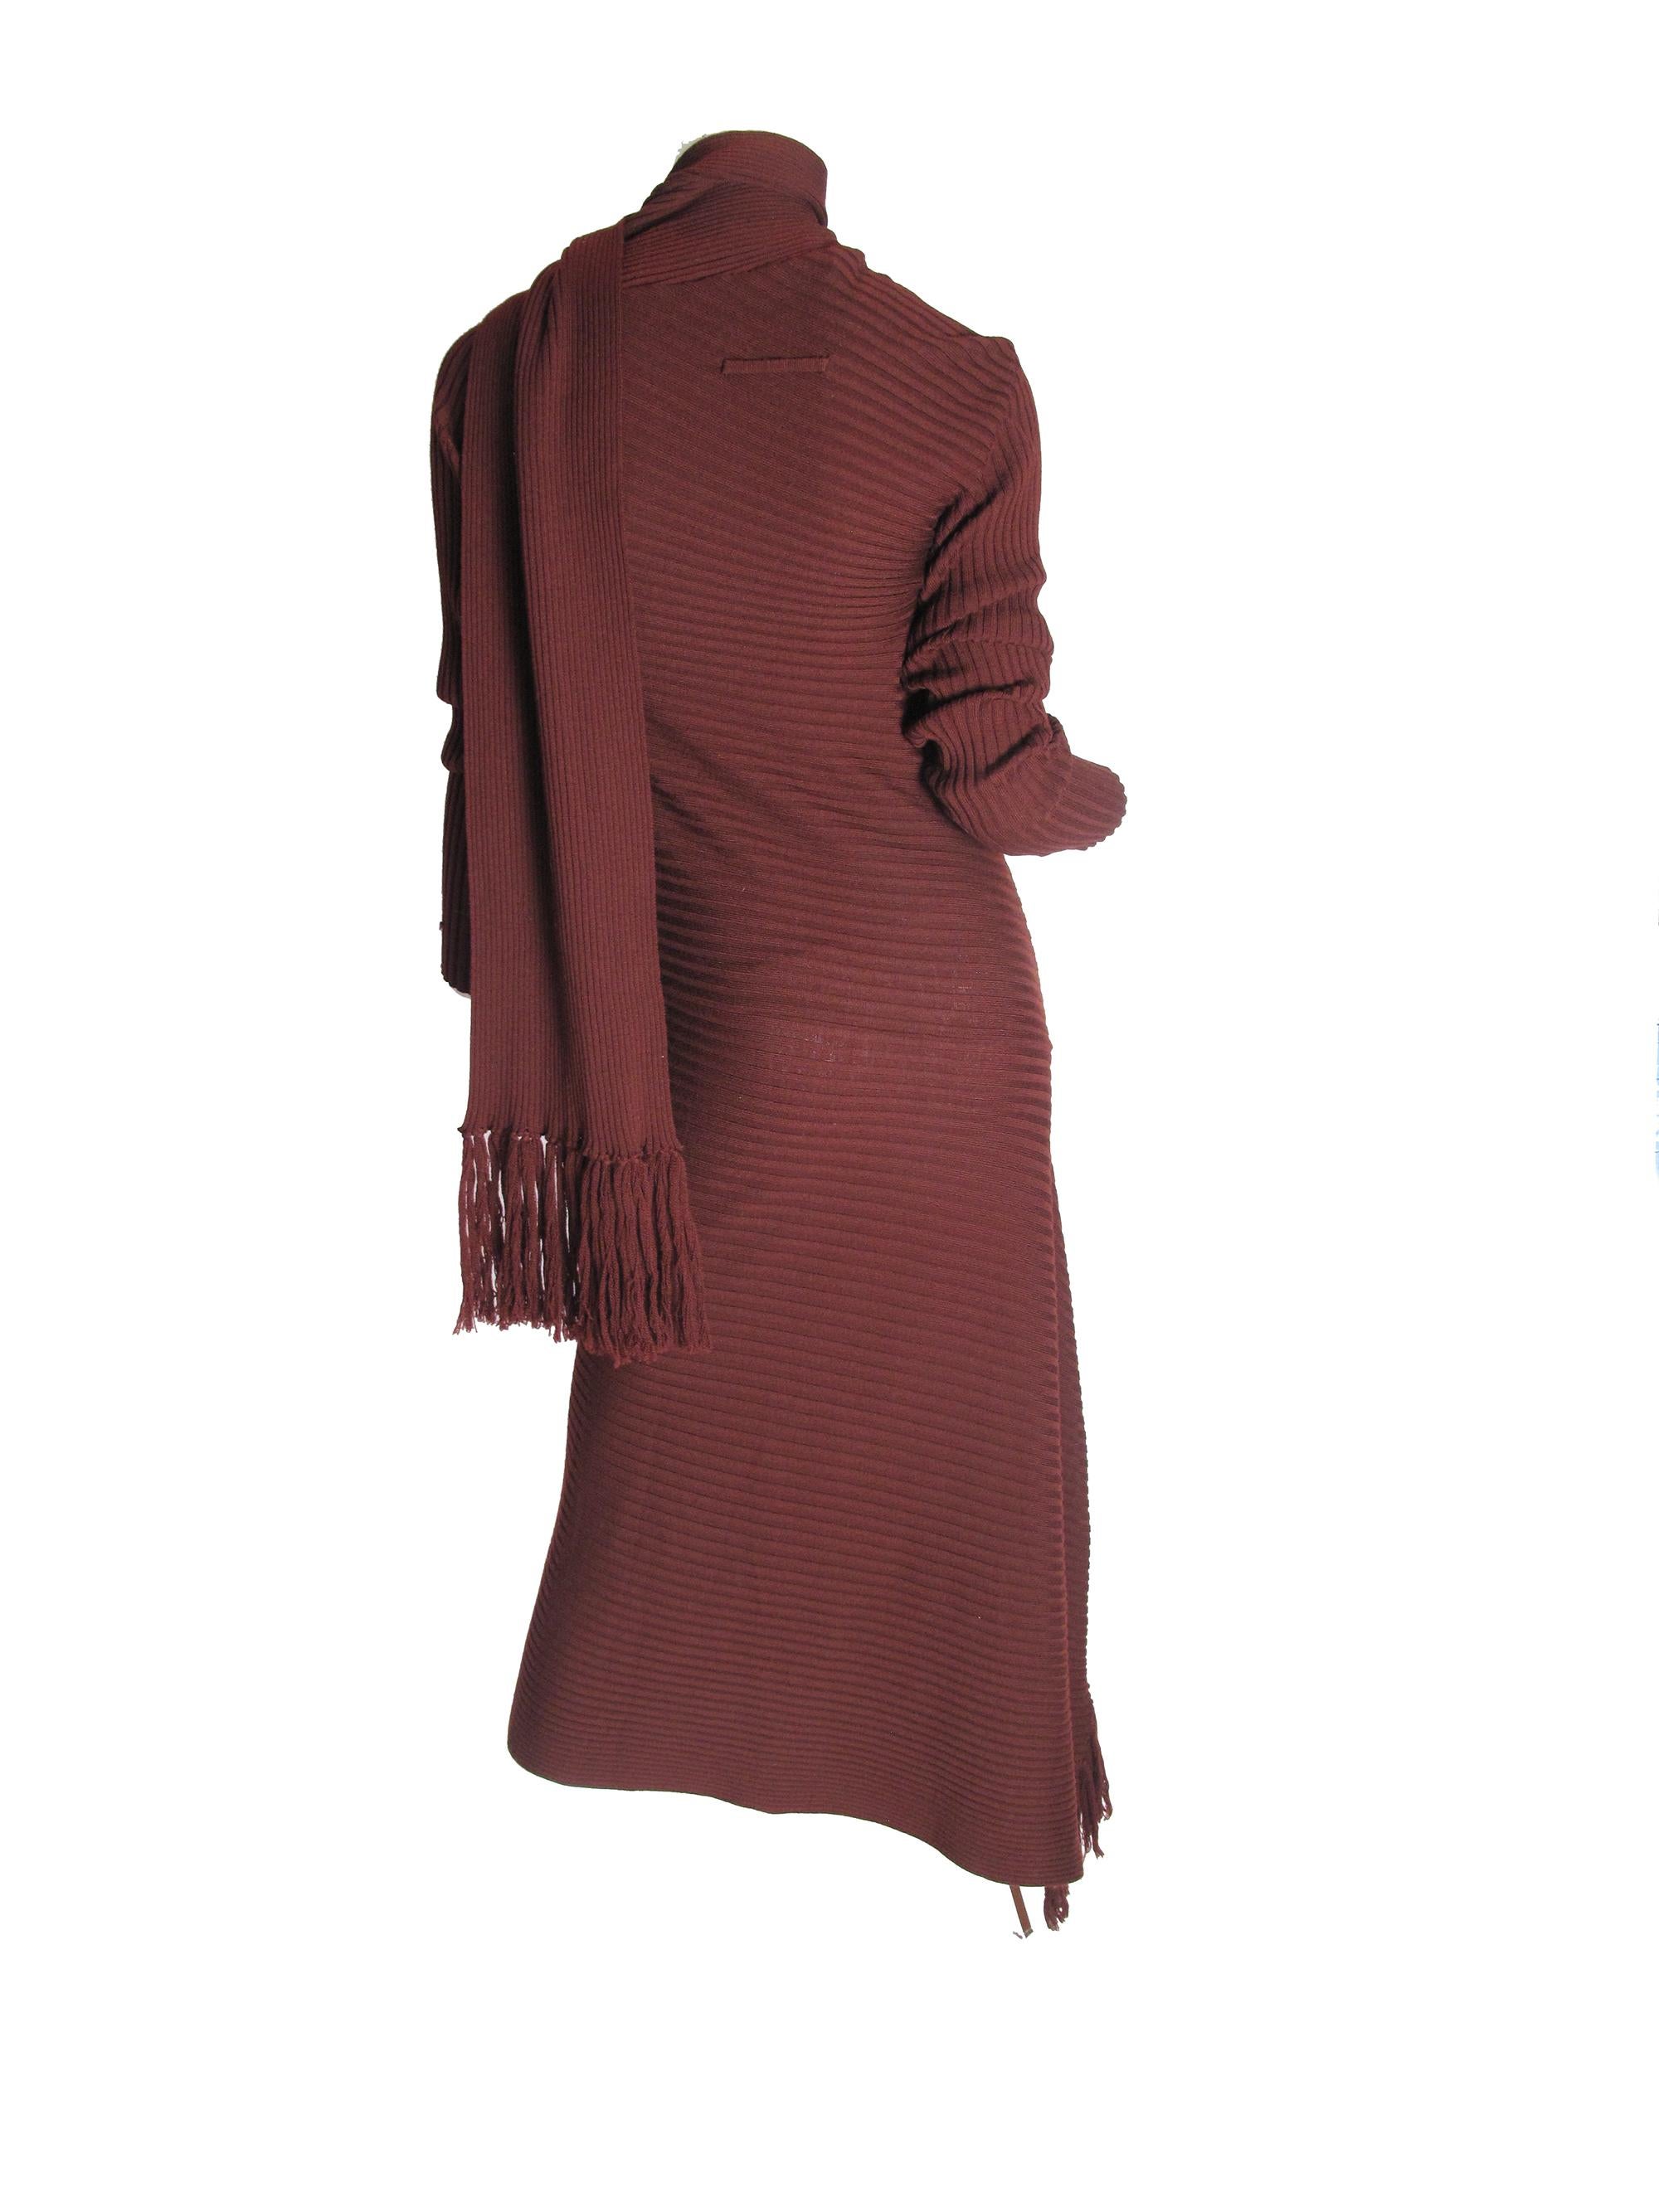 Brown Jean Paul Gaultier Maroon Knit Dress, 1990s